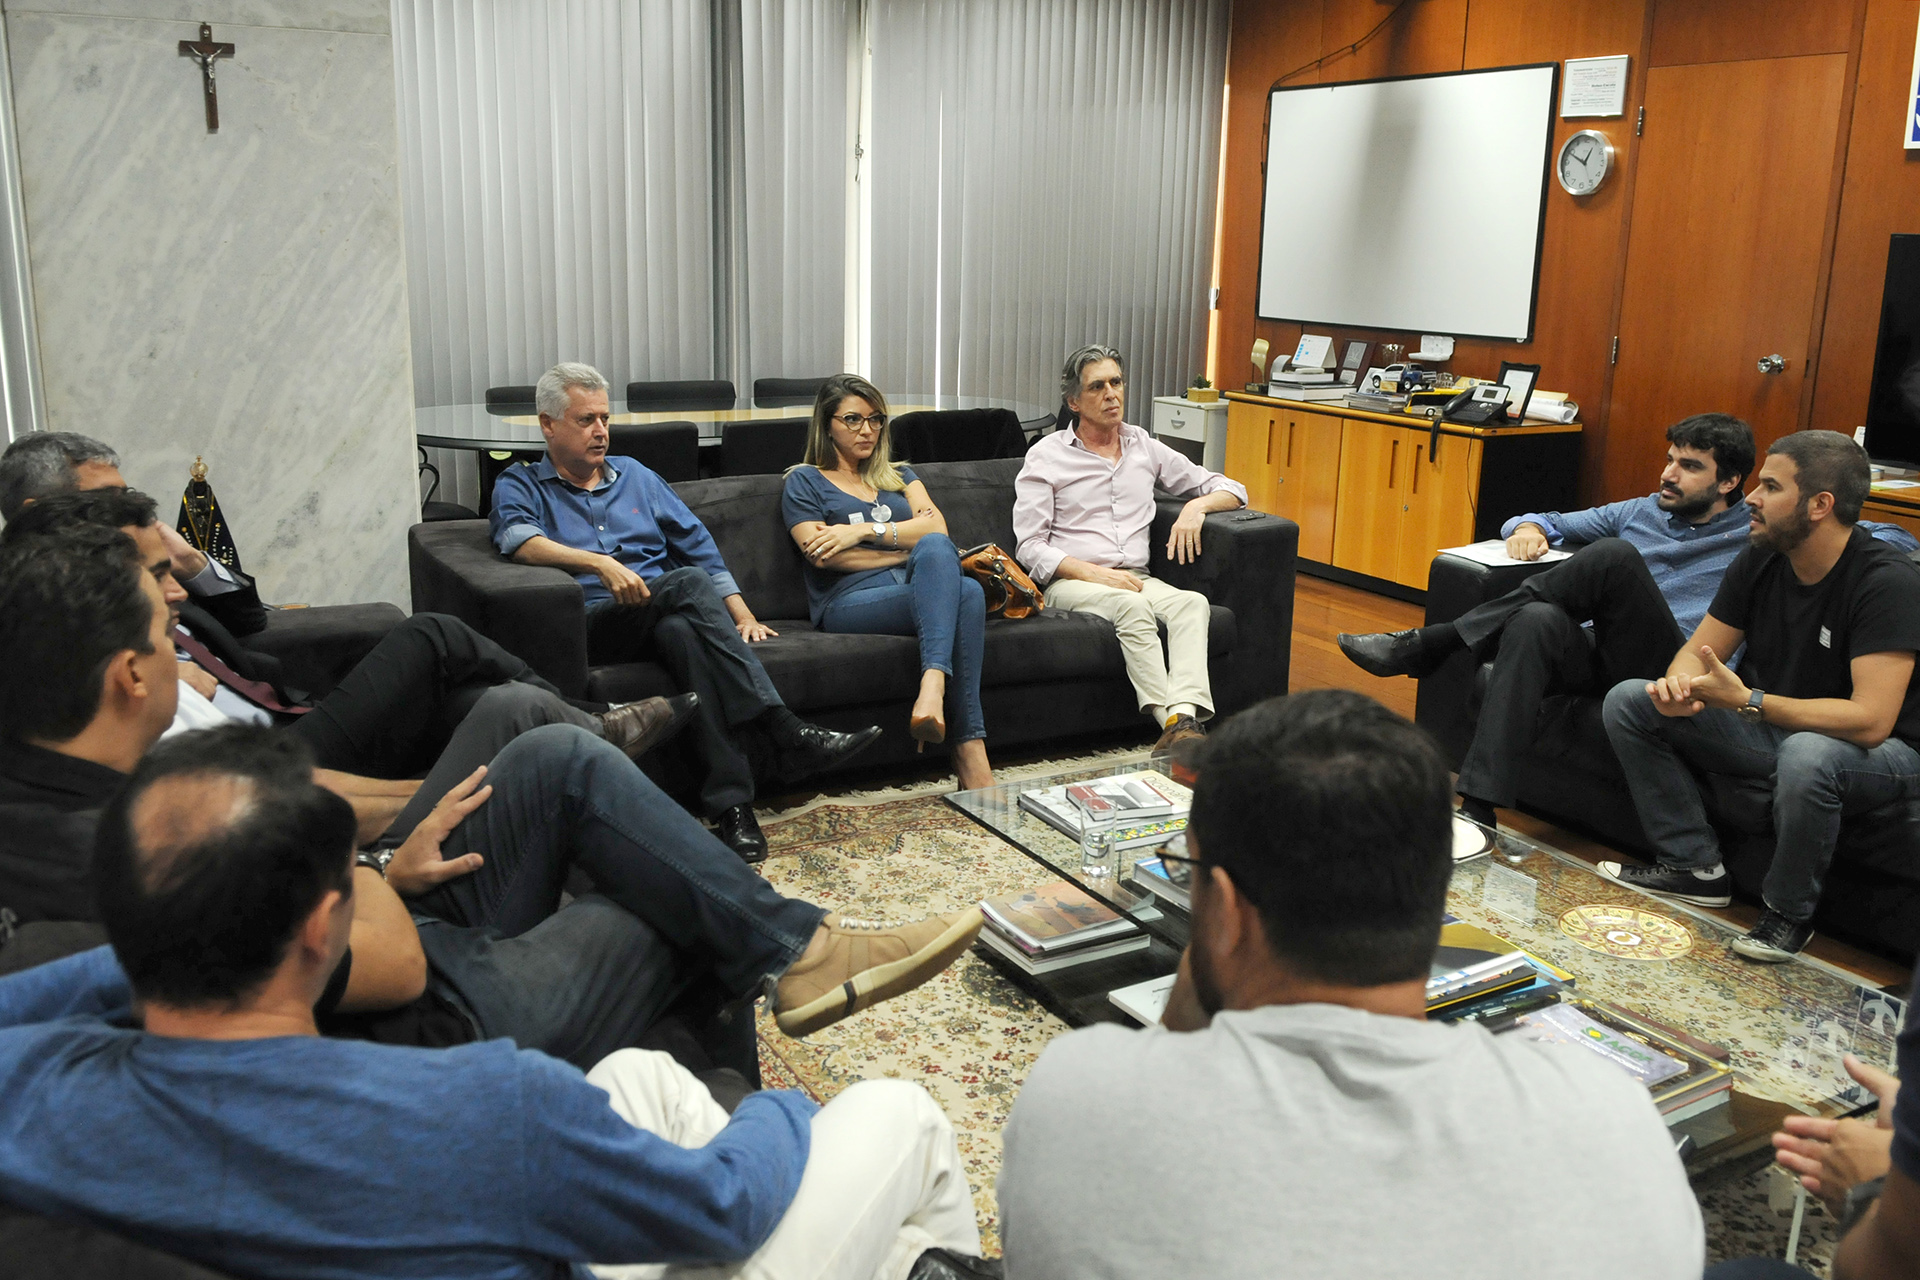 Em reunião com representantes de produtores culturais de Brasília, nesta segunda (26), o governador Rodrigo Rollemberg reforçou o empenho em apoiar eventos que fortalecem a produção local